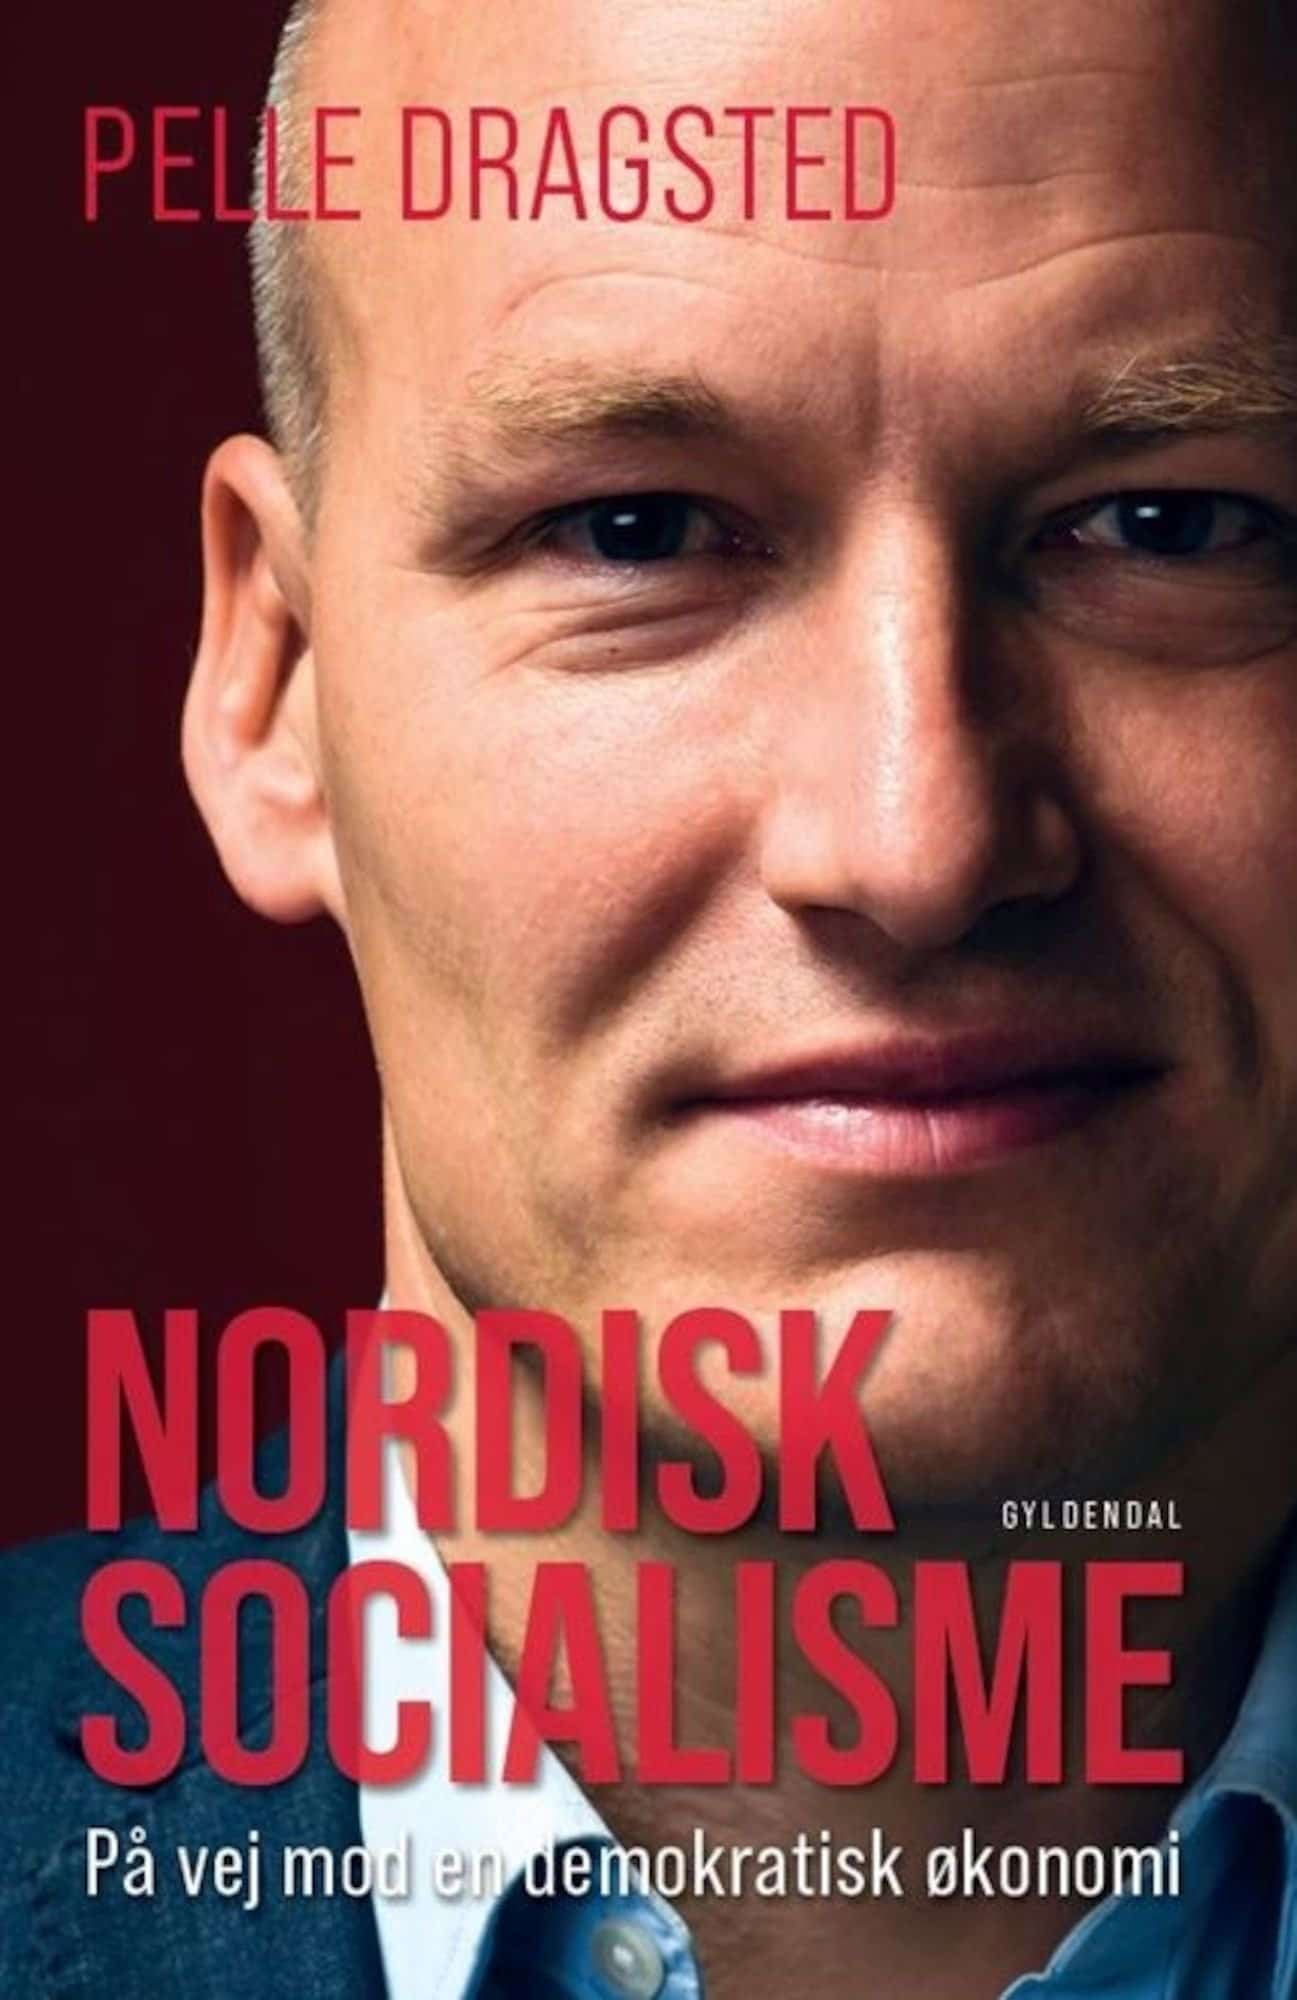 Forsiden til bogen "Nordisk socialisme" af Pelle Dragsted